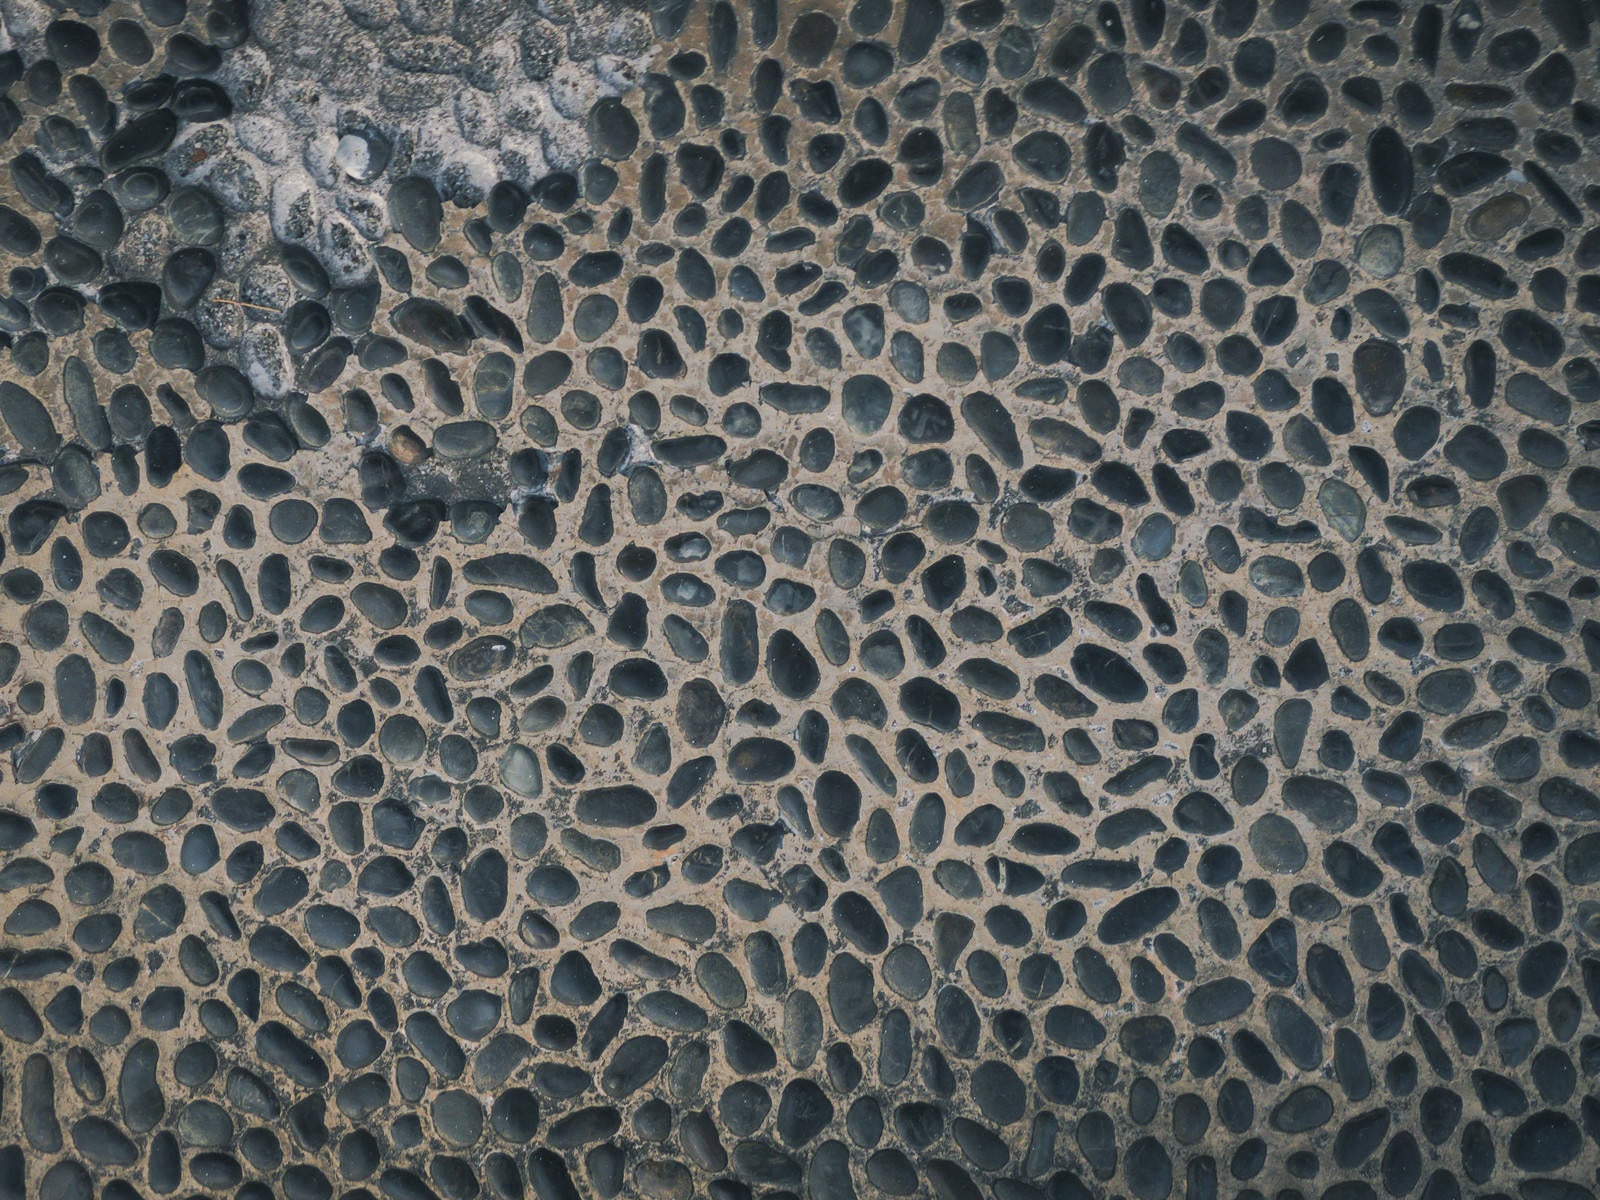 「剥がれた箇所のある小石床」の写真